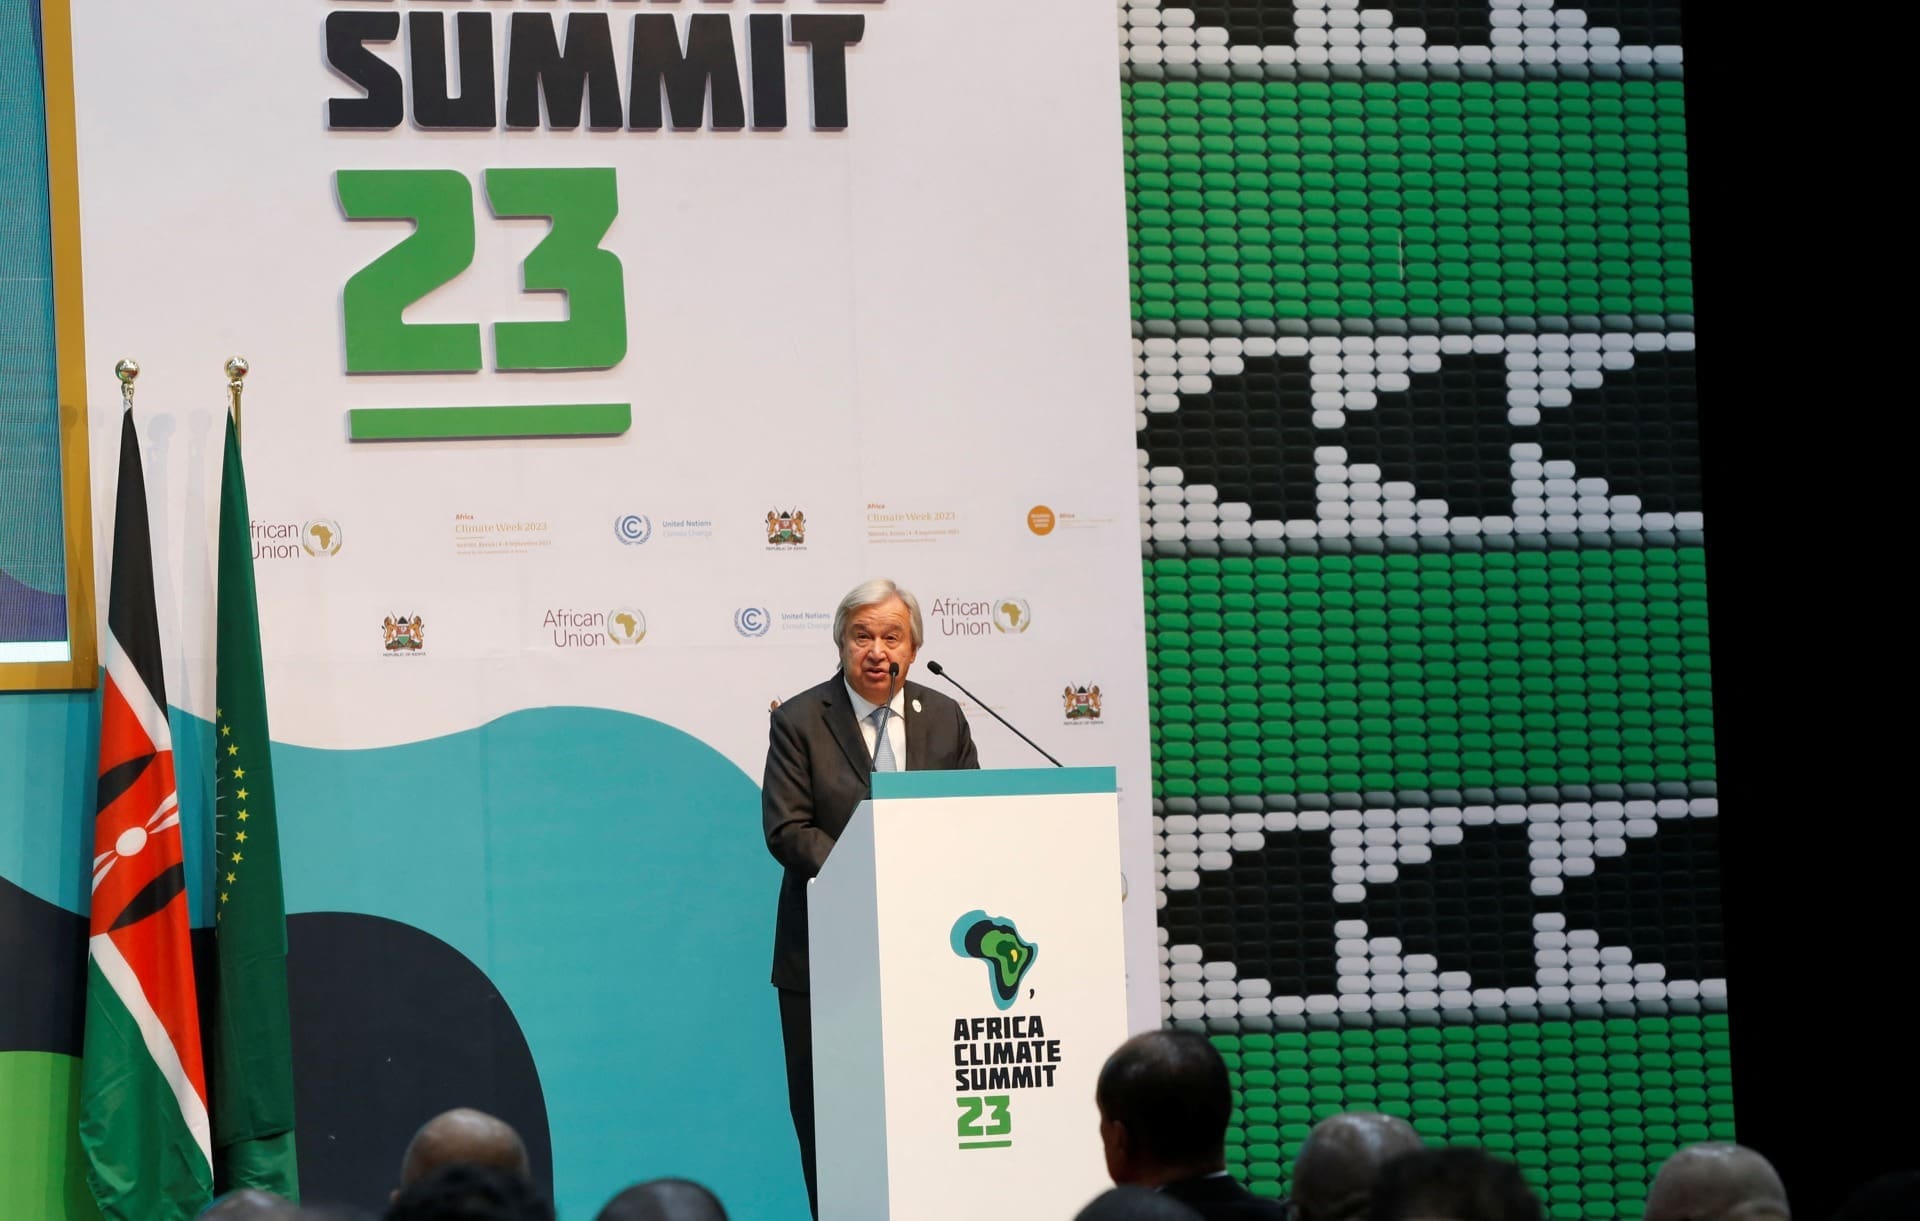 Cimeira do clima de África: Guterres apela aos ‘deveres’ dos países ricos